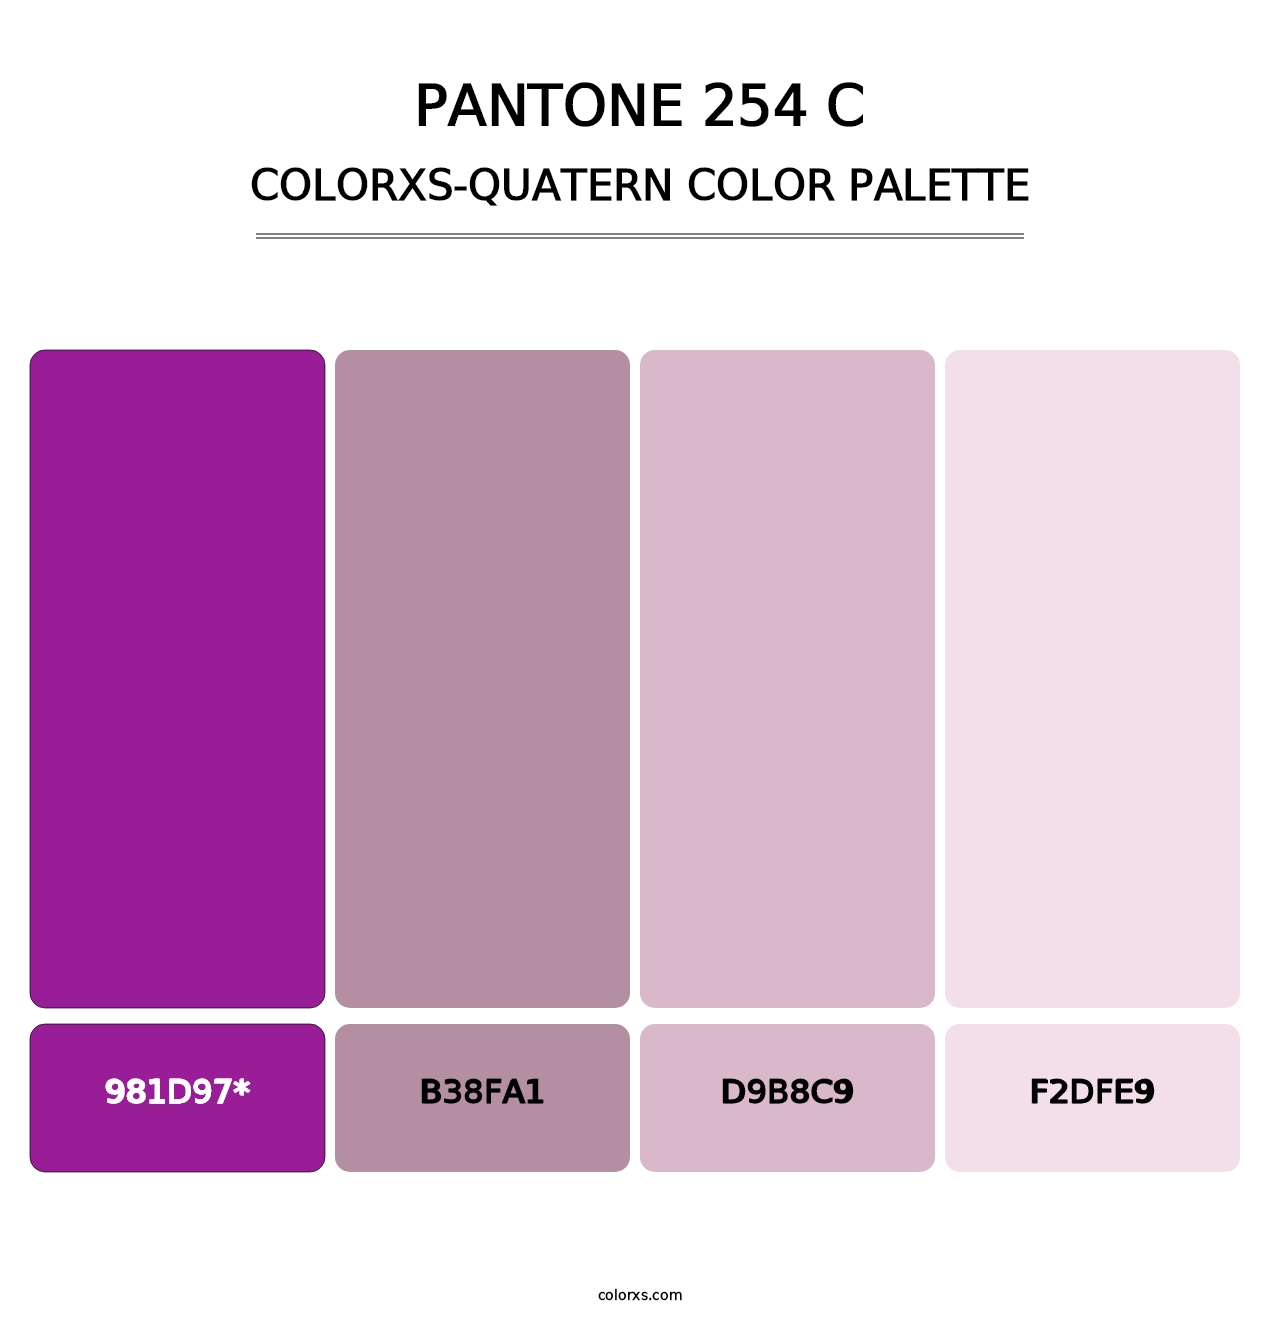 PANTONE 254 C - Colorxs Quatern Palette